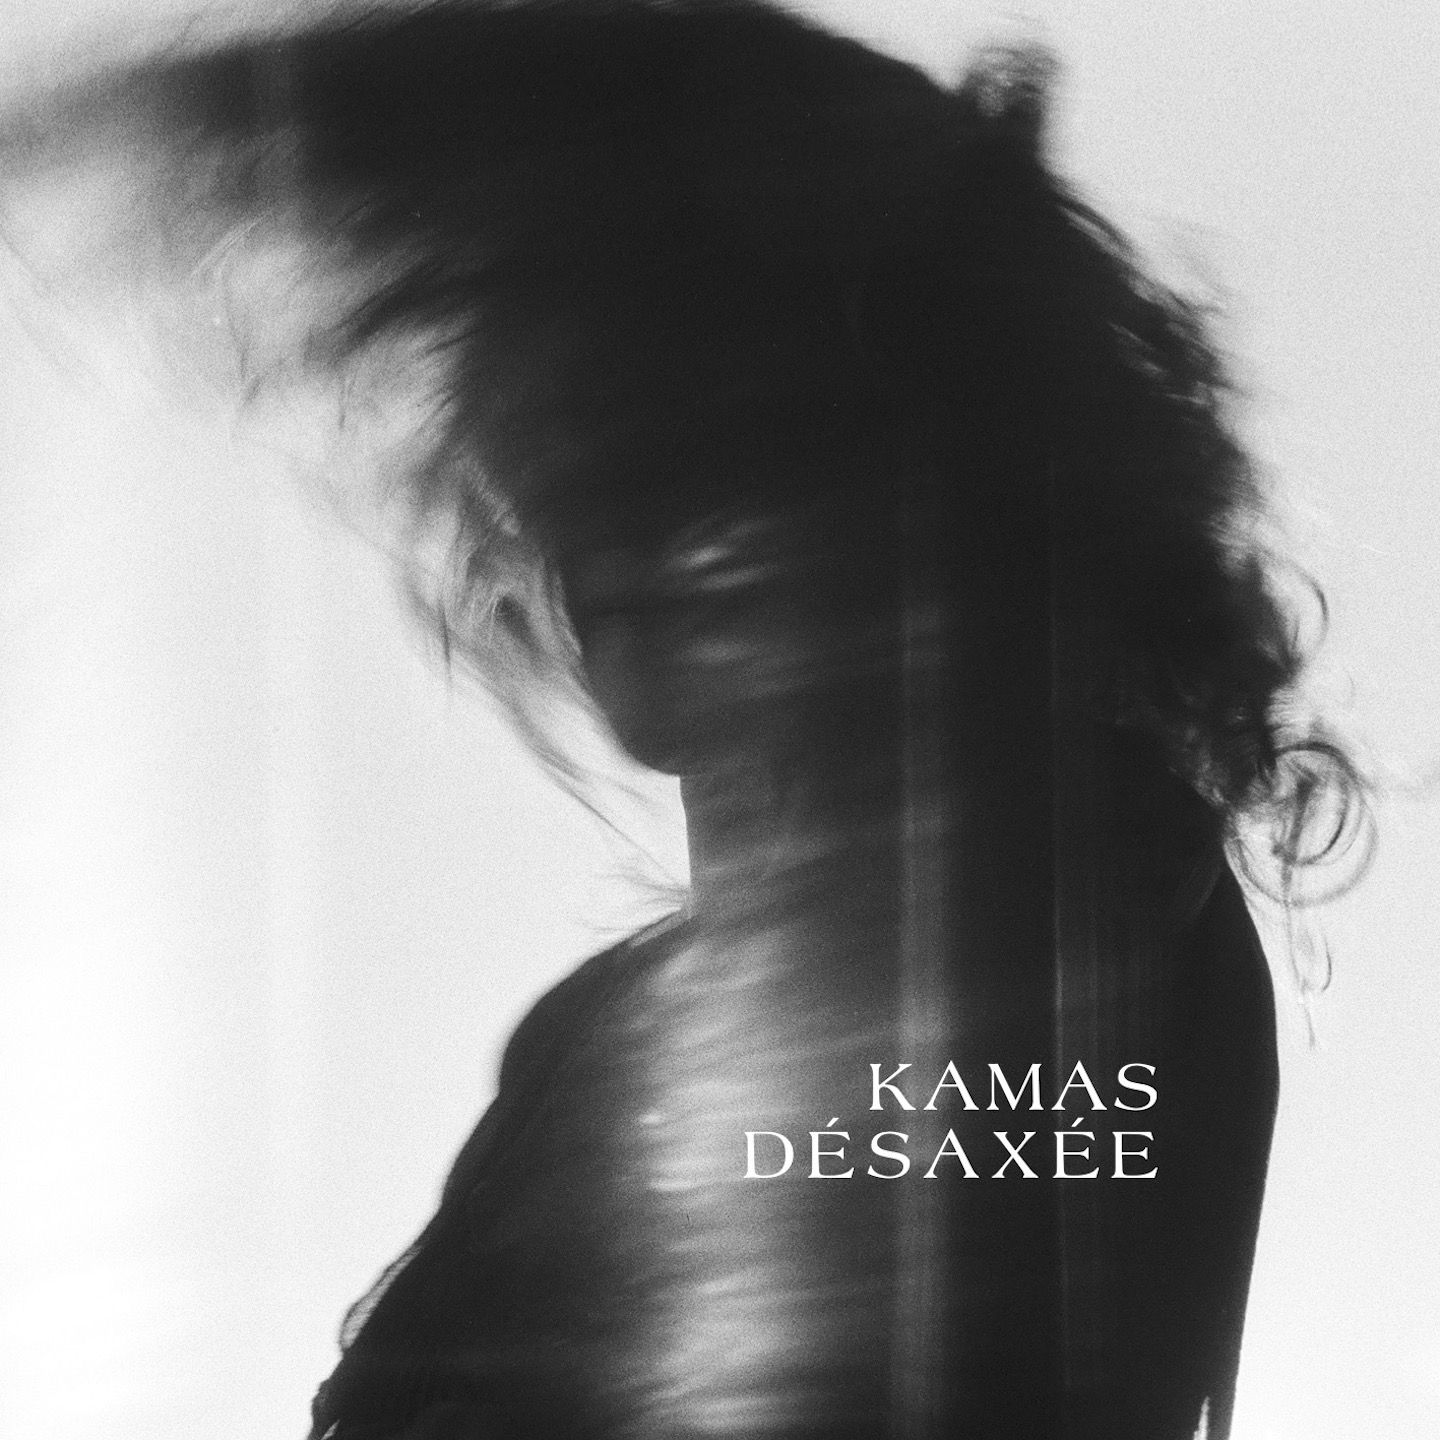 Kamas chante Désaxée, nouvel album découvrir